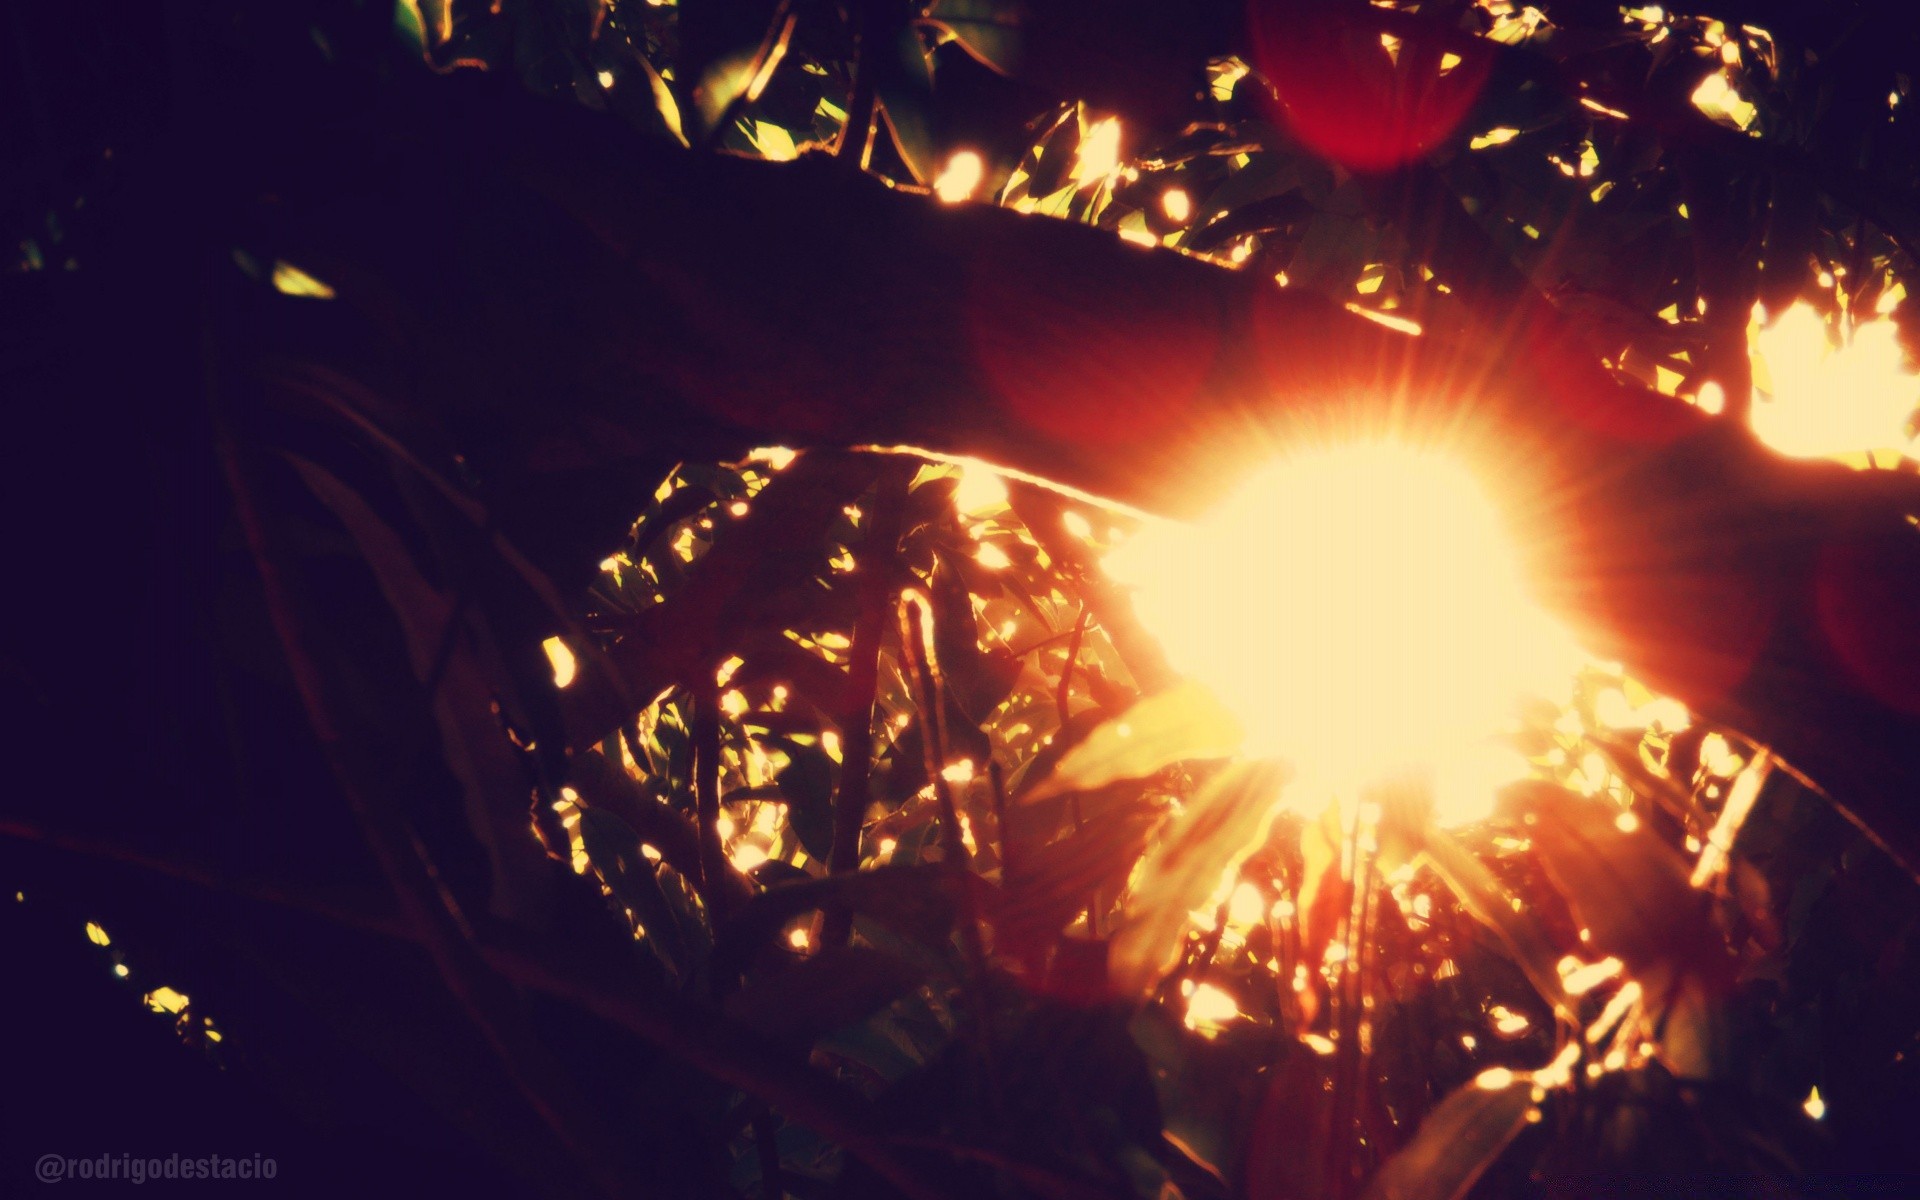 винтаж пламя фестиваль рождество праздник темный яркий свет тепло горячая участник подсветкой искра светит люминесценция фейерверк тепло